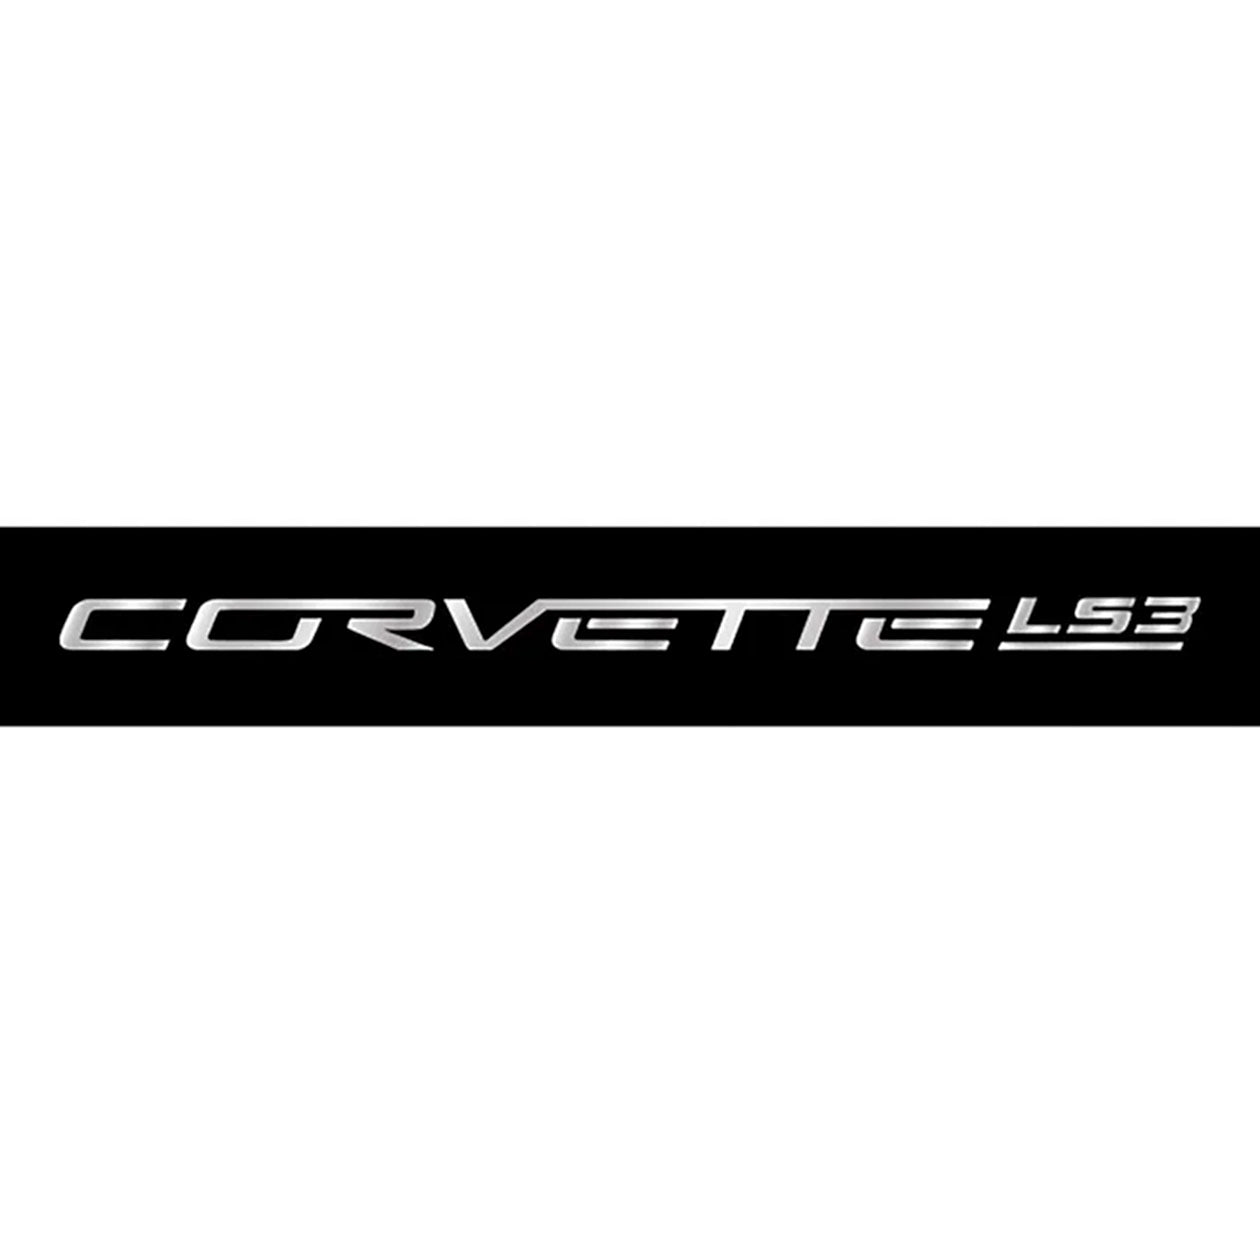 C6 Corvette LS3 Fuel Rail Letters